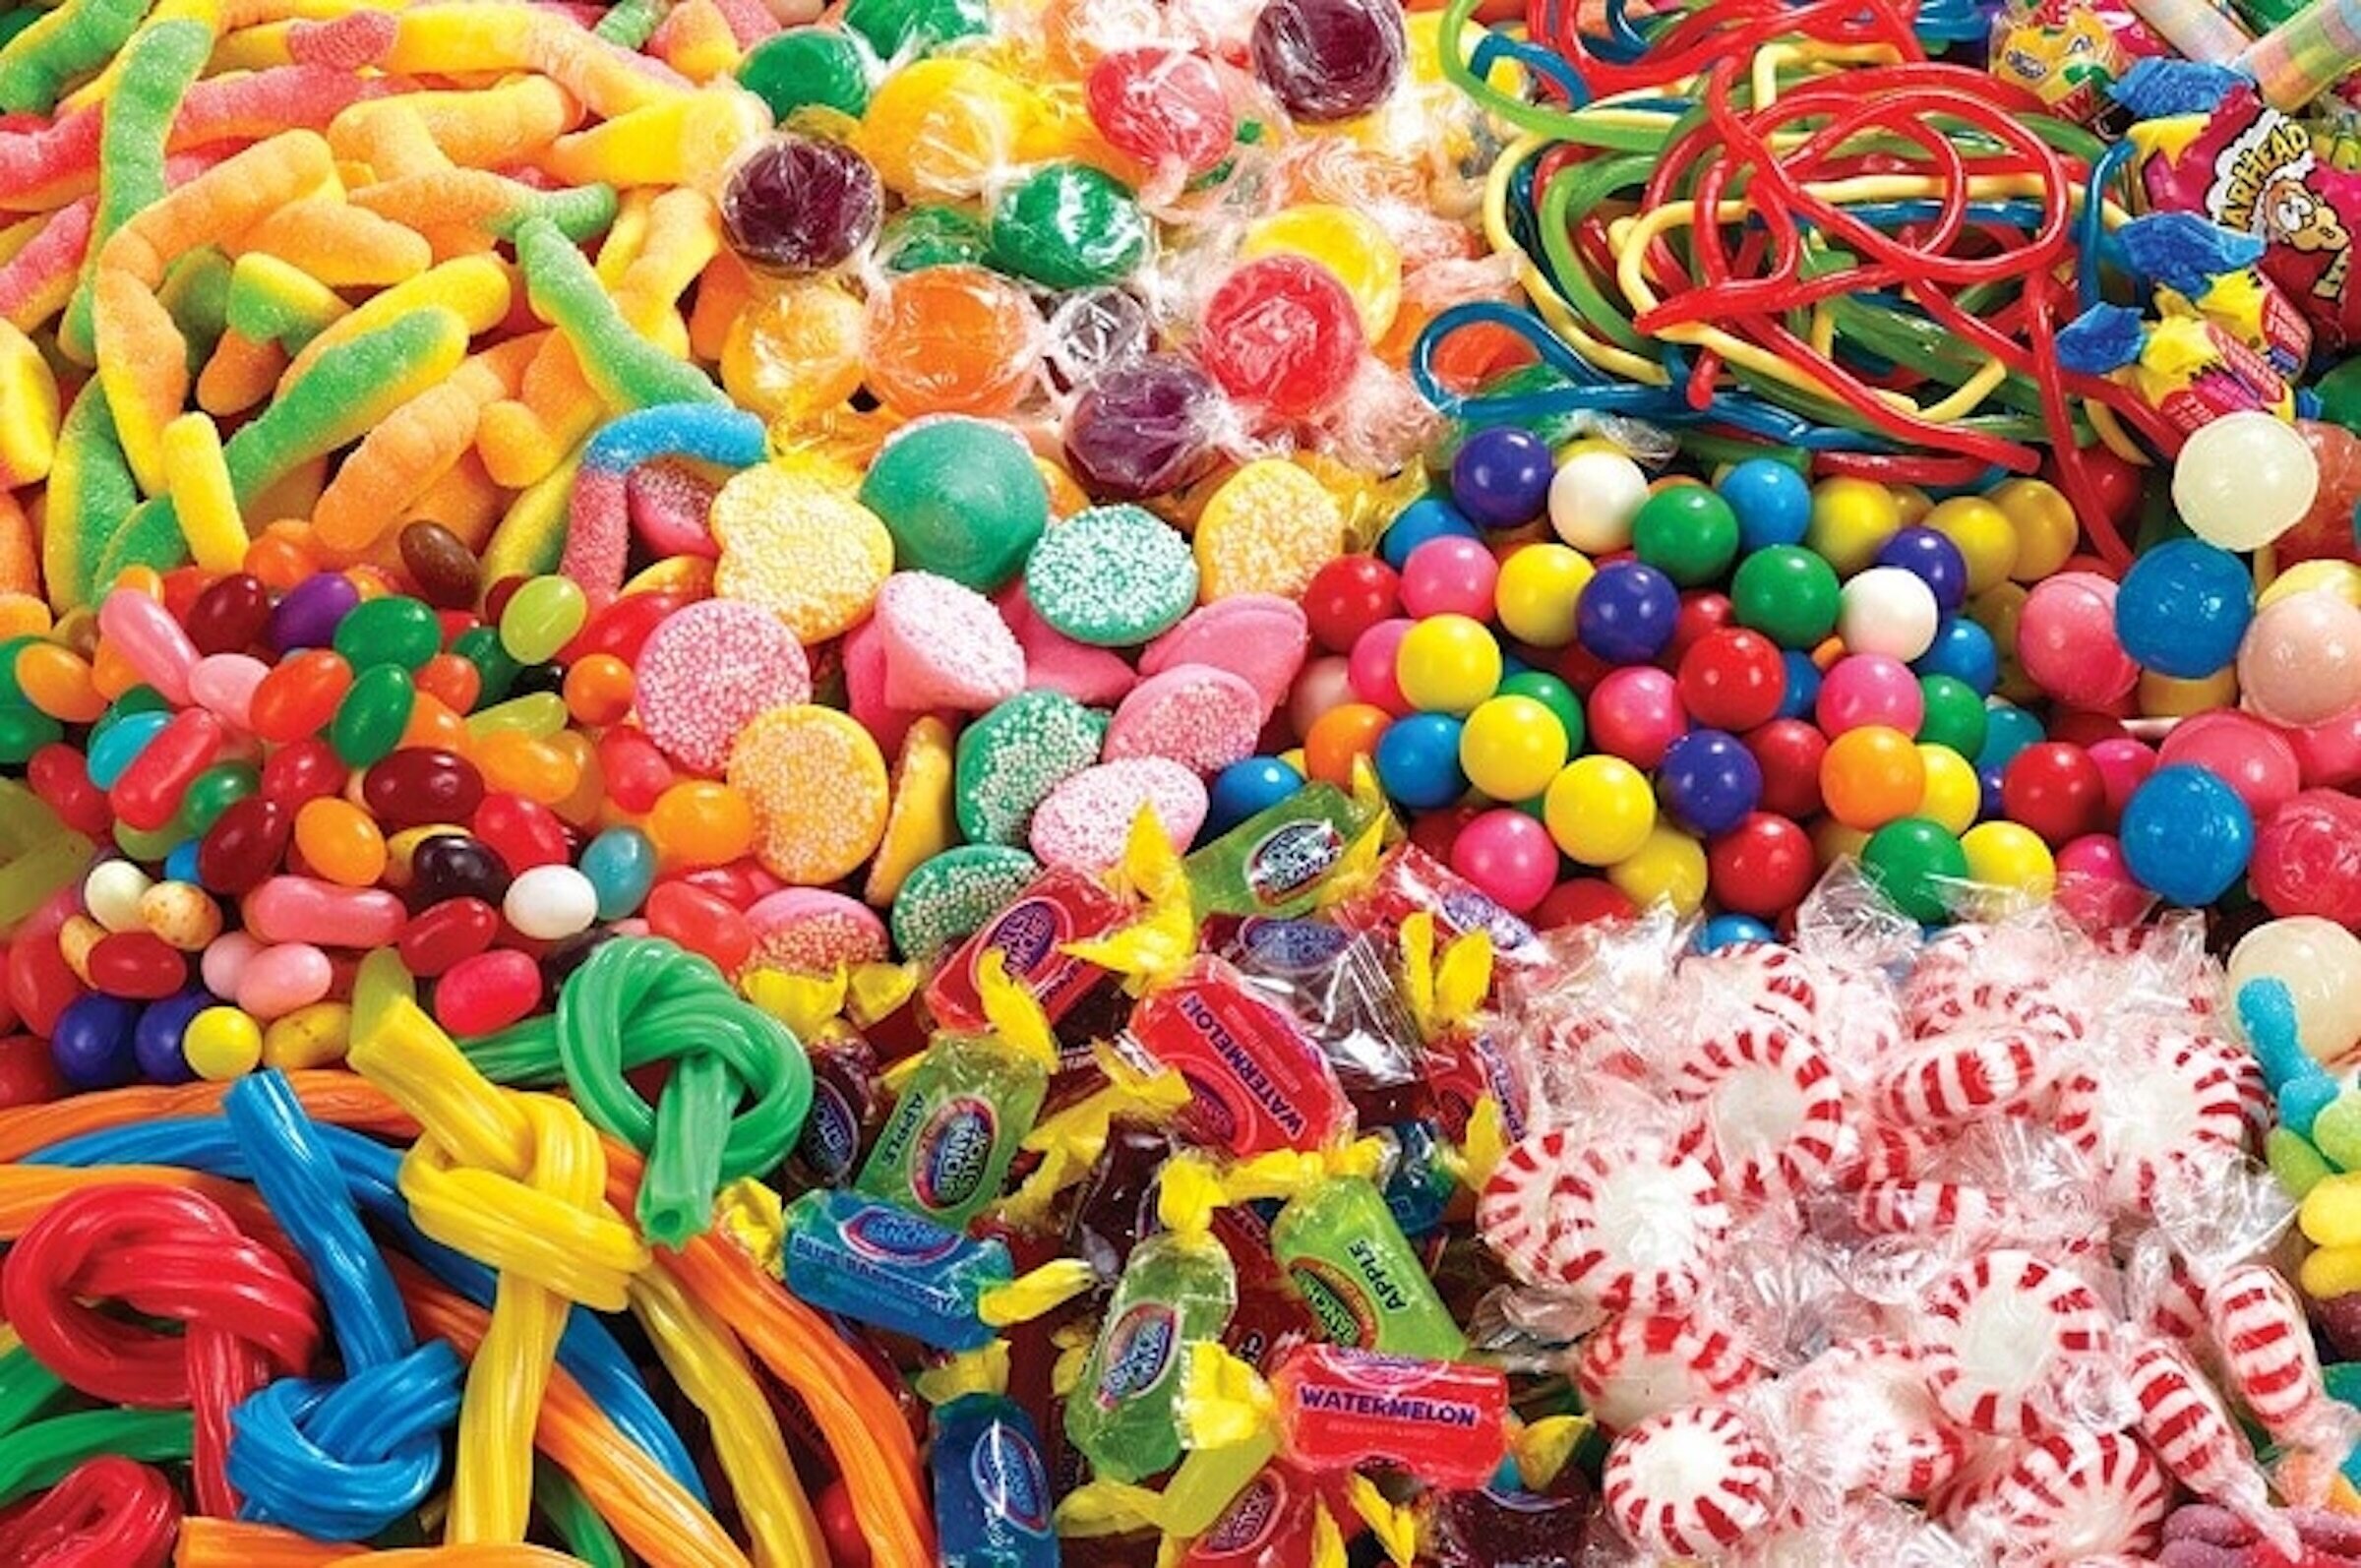 Không nên ăn quá nhiều kẹo. (Ảnh minh hoạ)